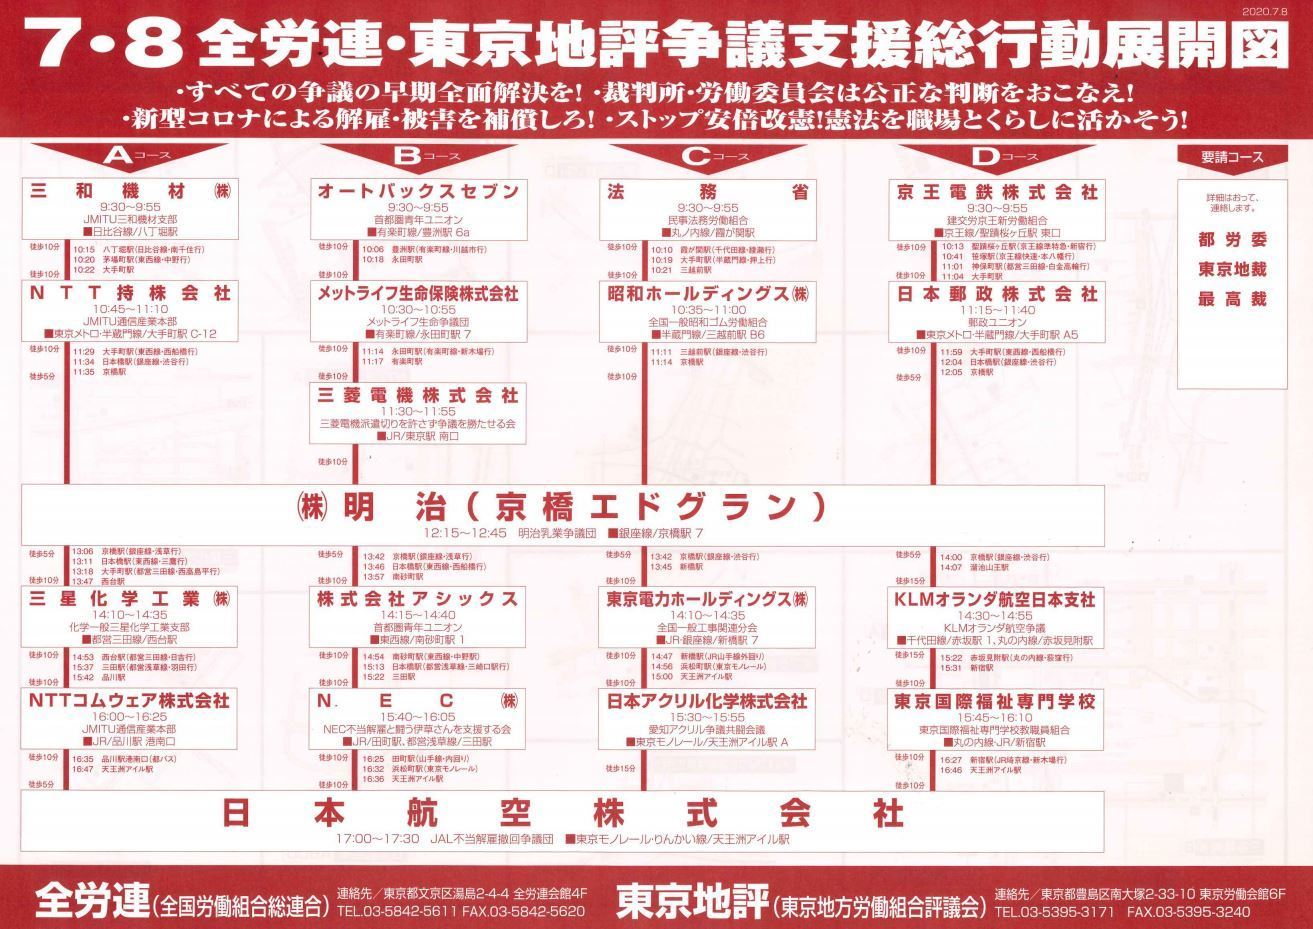 7 8 全労連 東京地評争議支援総行動展開図 千葉労連の資料